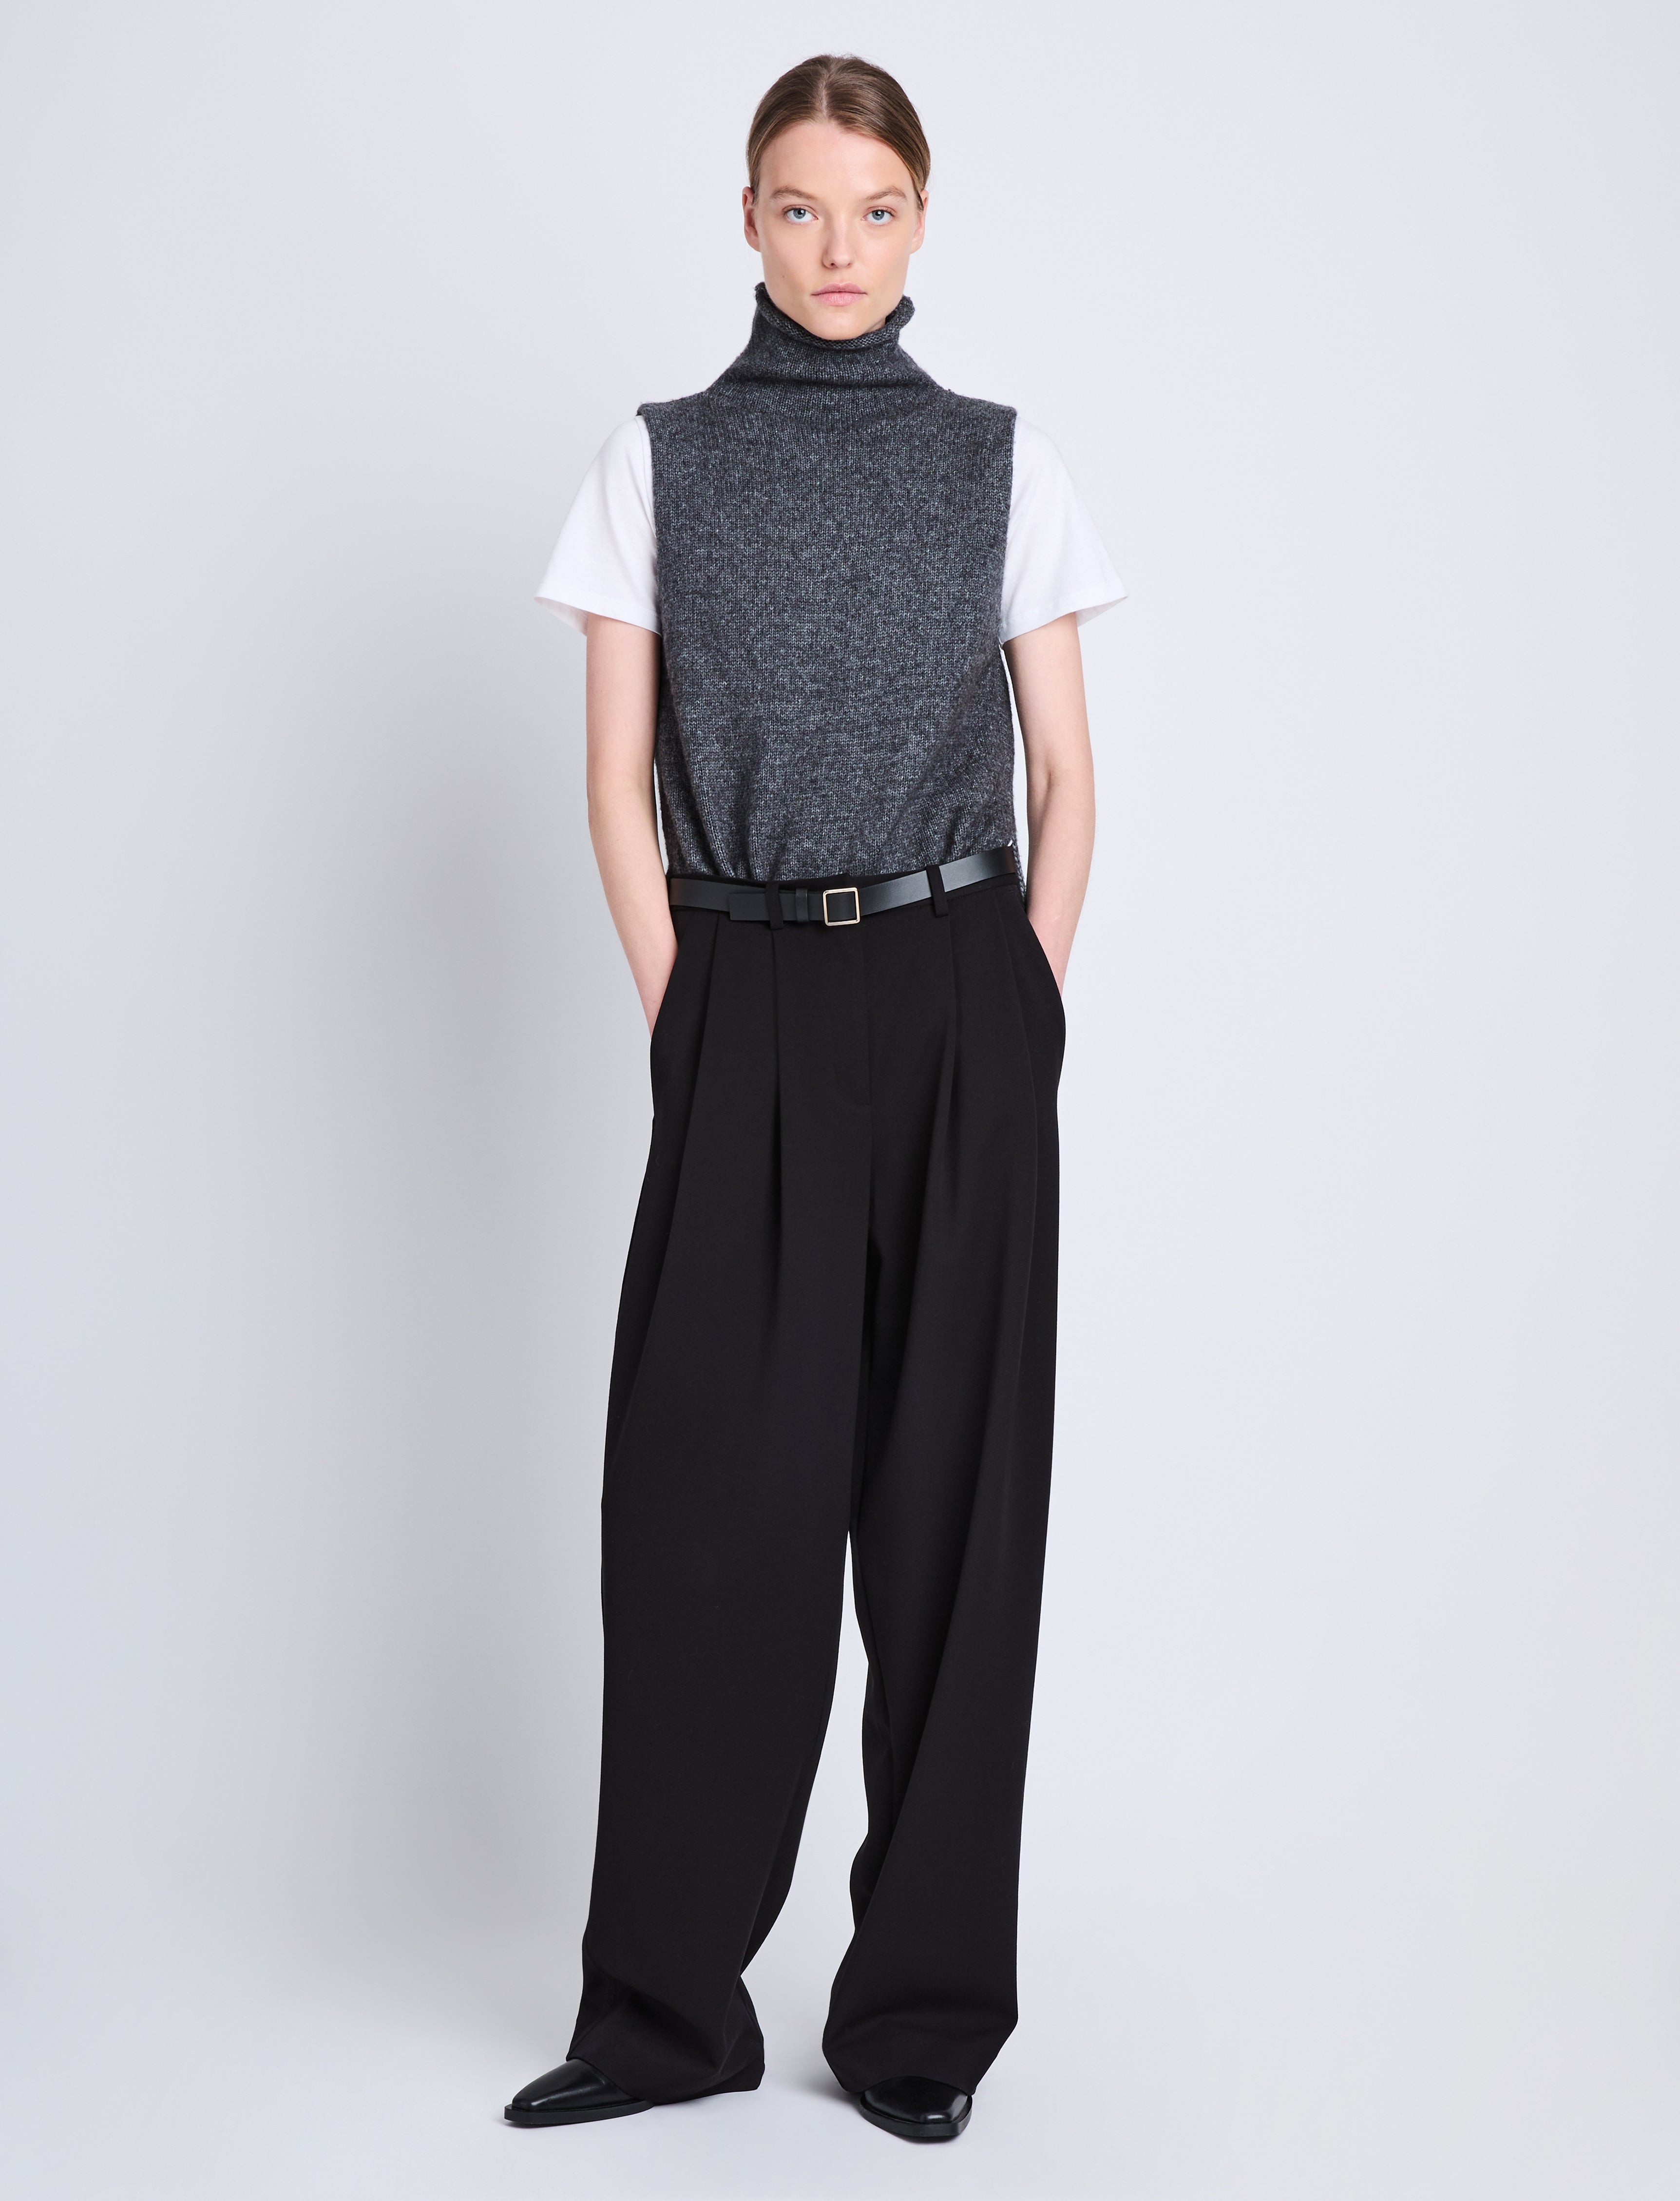 Lily Knit Turtleneck in Wool Blend - Grey Melange